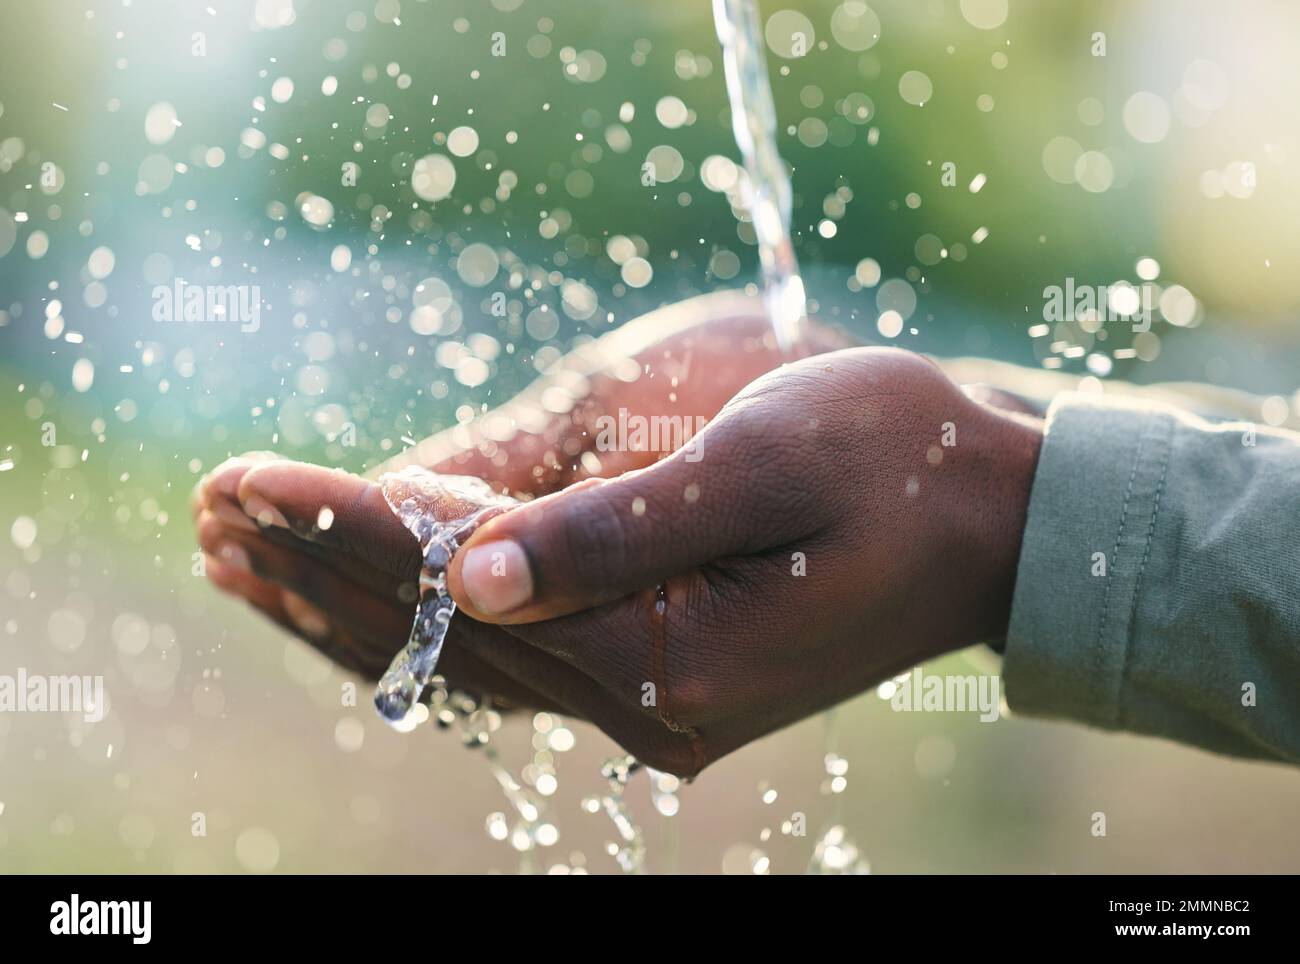 Hände, Spritzer und Mensch mit natürlichem Wasser zum Waschen, Reinigen oder für Körperhygiene im Freien. Natürliche, organische und afrikanische männliche Hand mit Aqua zum Waschen oder Stockfoto